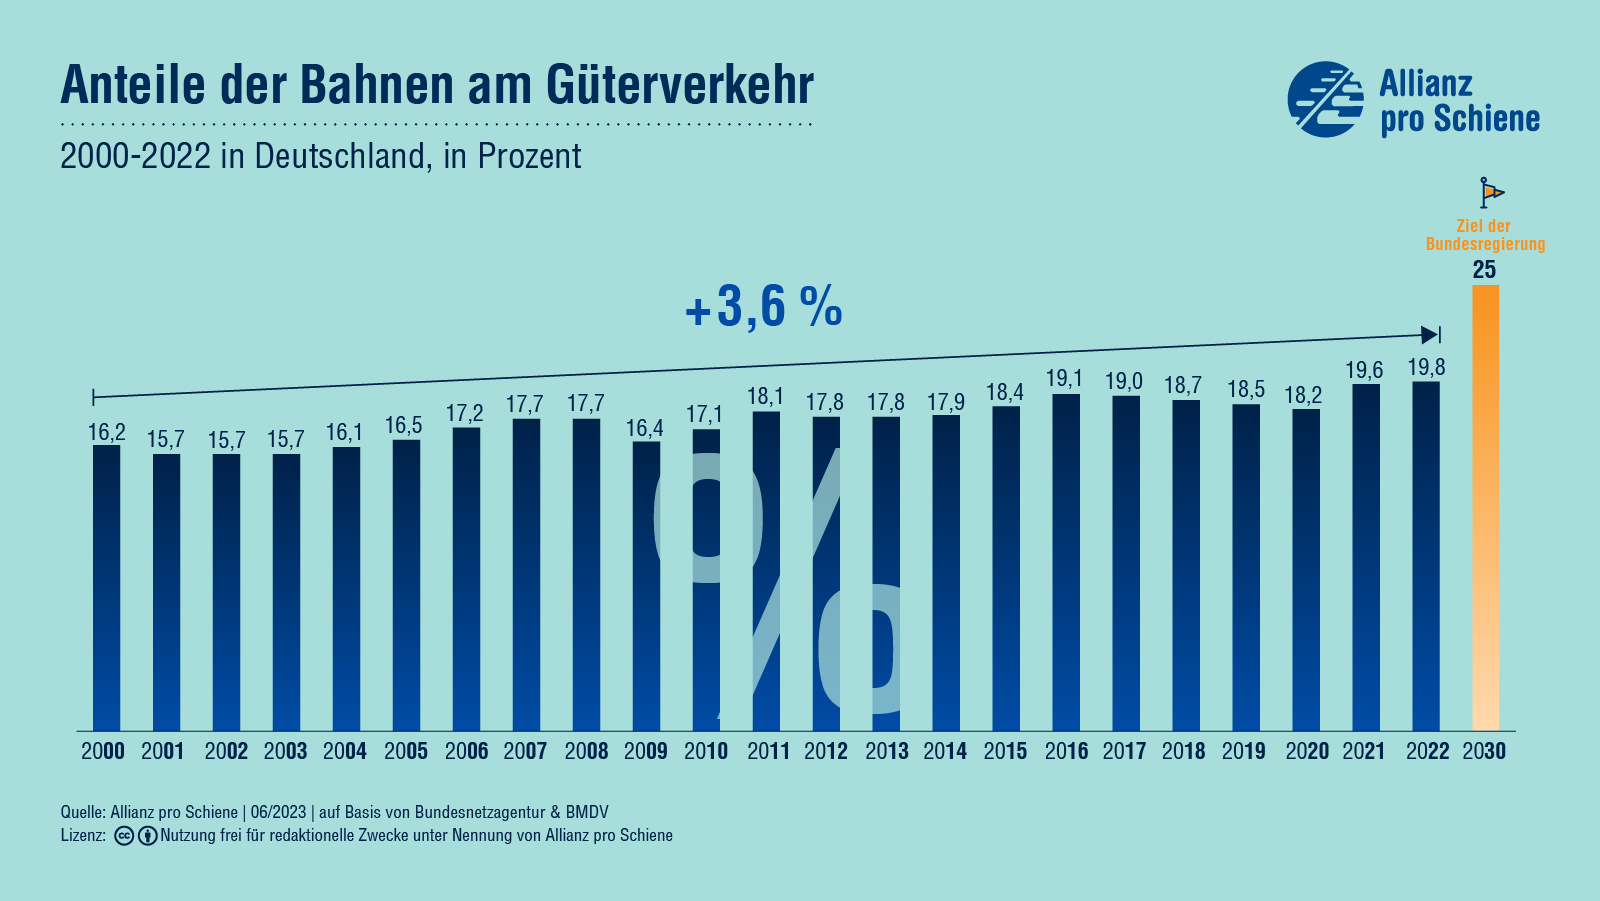 Der Anteil der Bahnen am Güterverkehr in Deutschland ist zwischen 2000 und 2022 von 16,2% um 3.6% auf 19,8% gestiegen. Bis 2030 sollen es laut dem Zeil der Bundesregierung 25% werden.